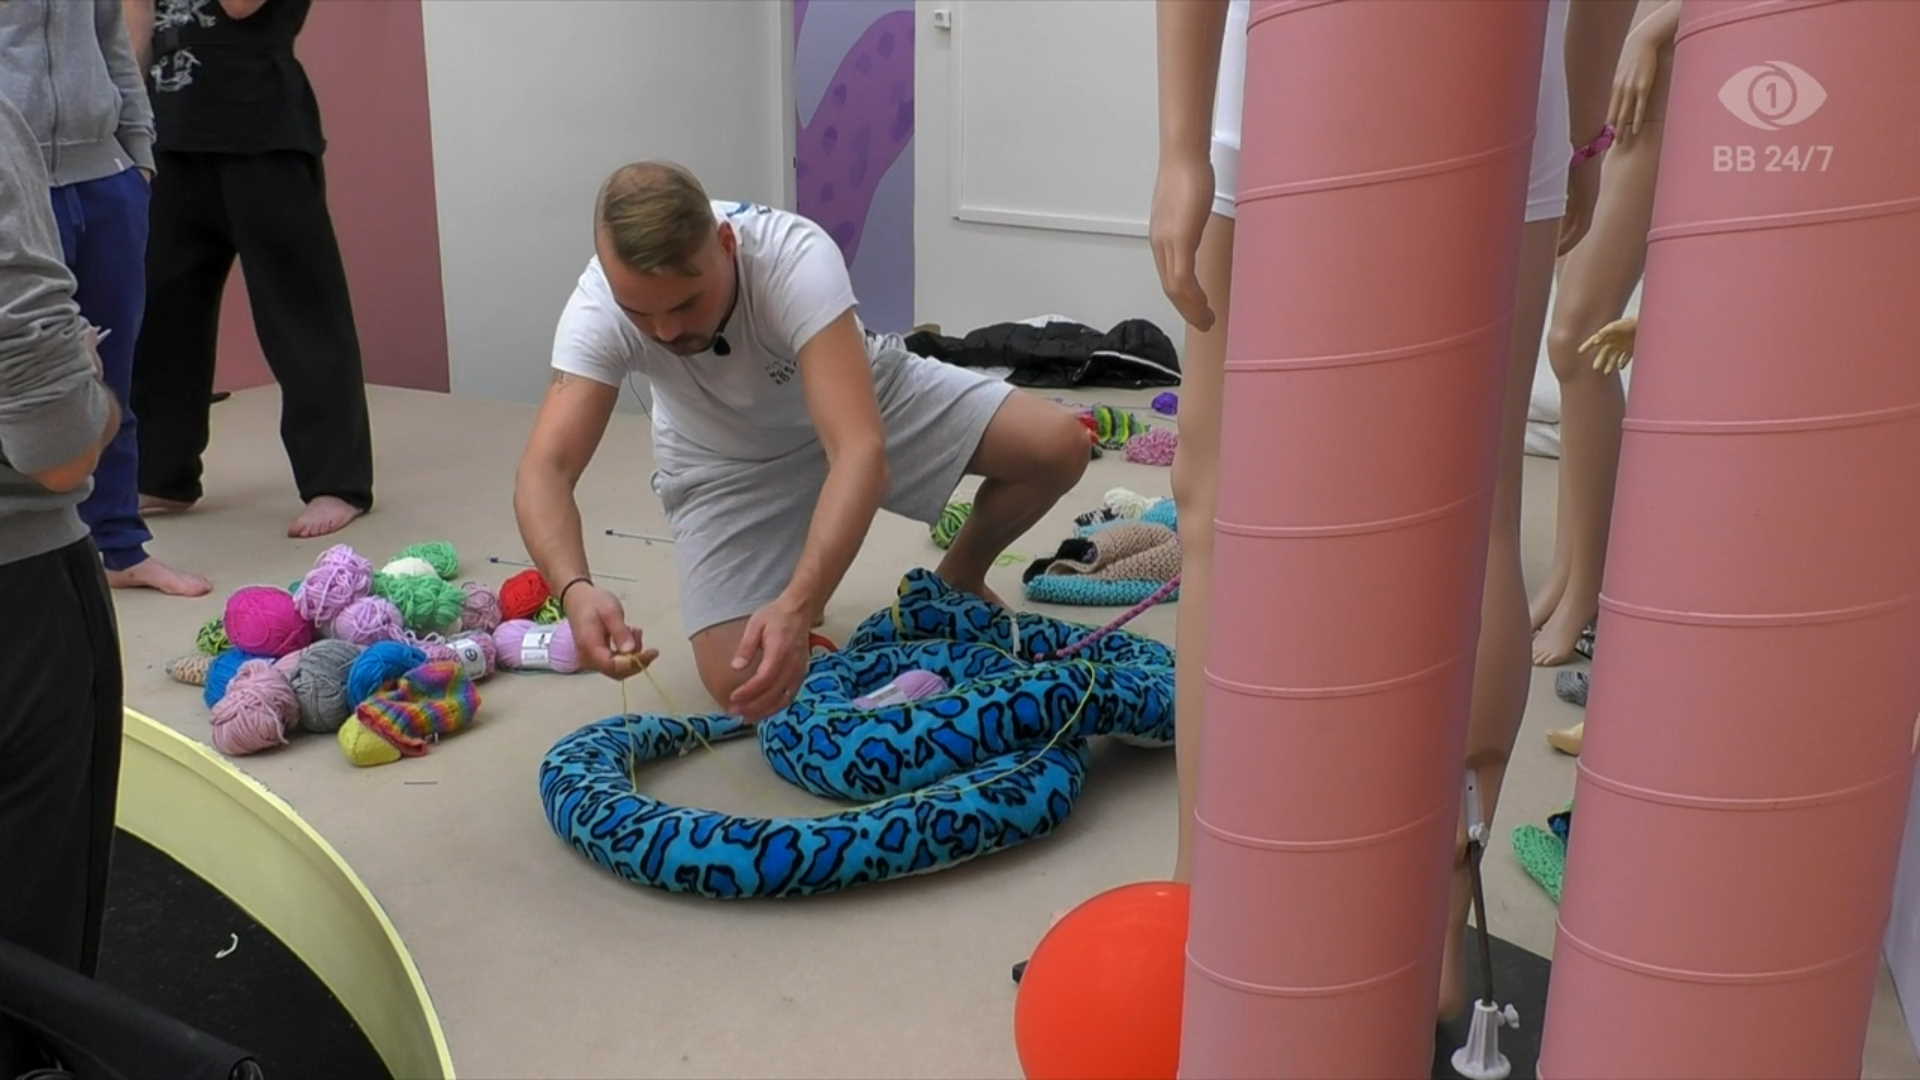 Marko mittaa taloon tulleen lelukäärmeen pituutta langan avulla. Kuva: © Nelonen Media.